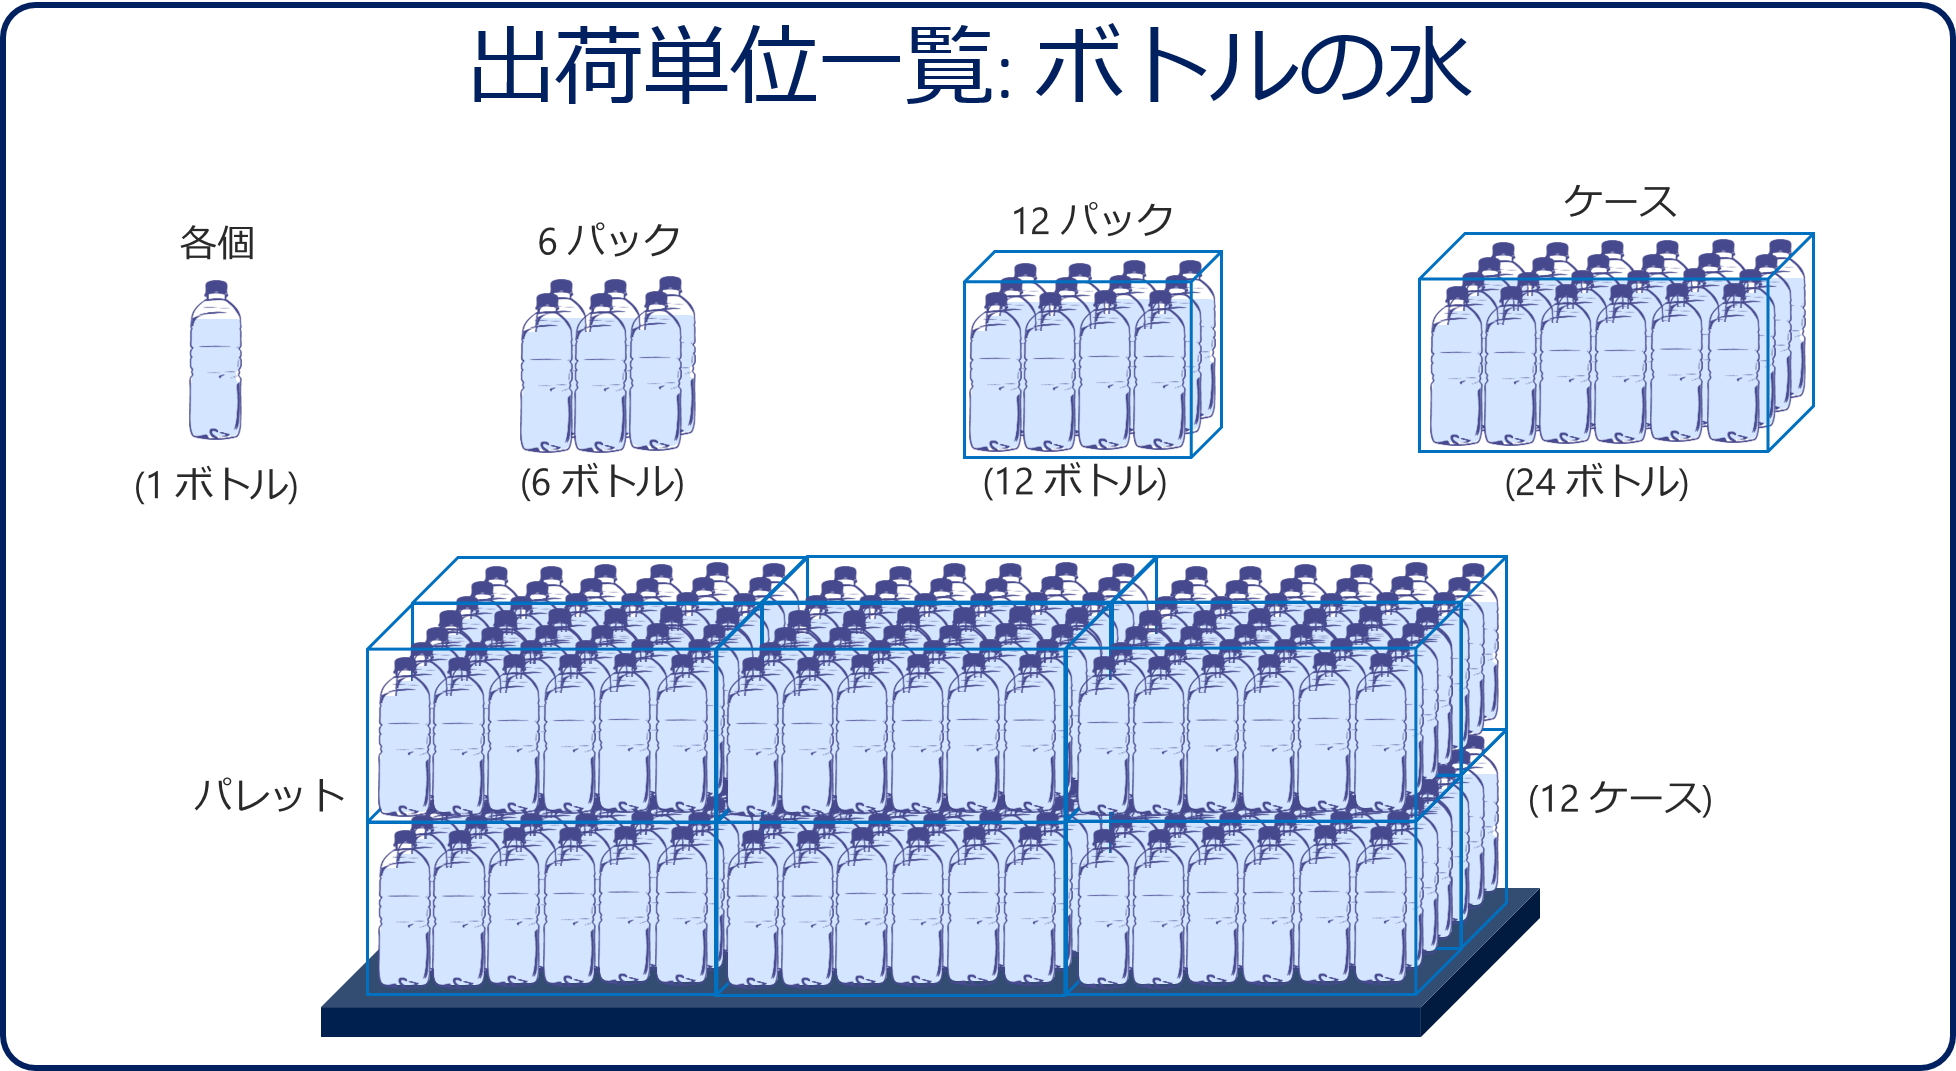 出荷単位一覧: ボトル入りの水。各、6 本パック、12 本パック、ケース (24)、パレット (12ケース)。